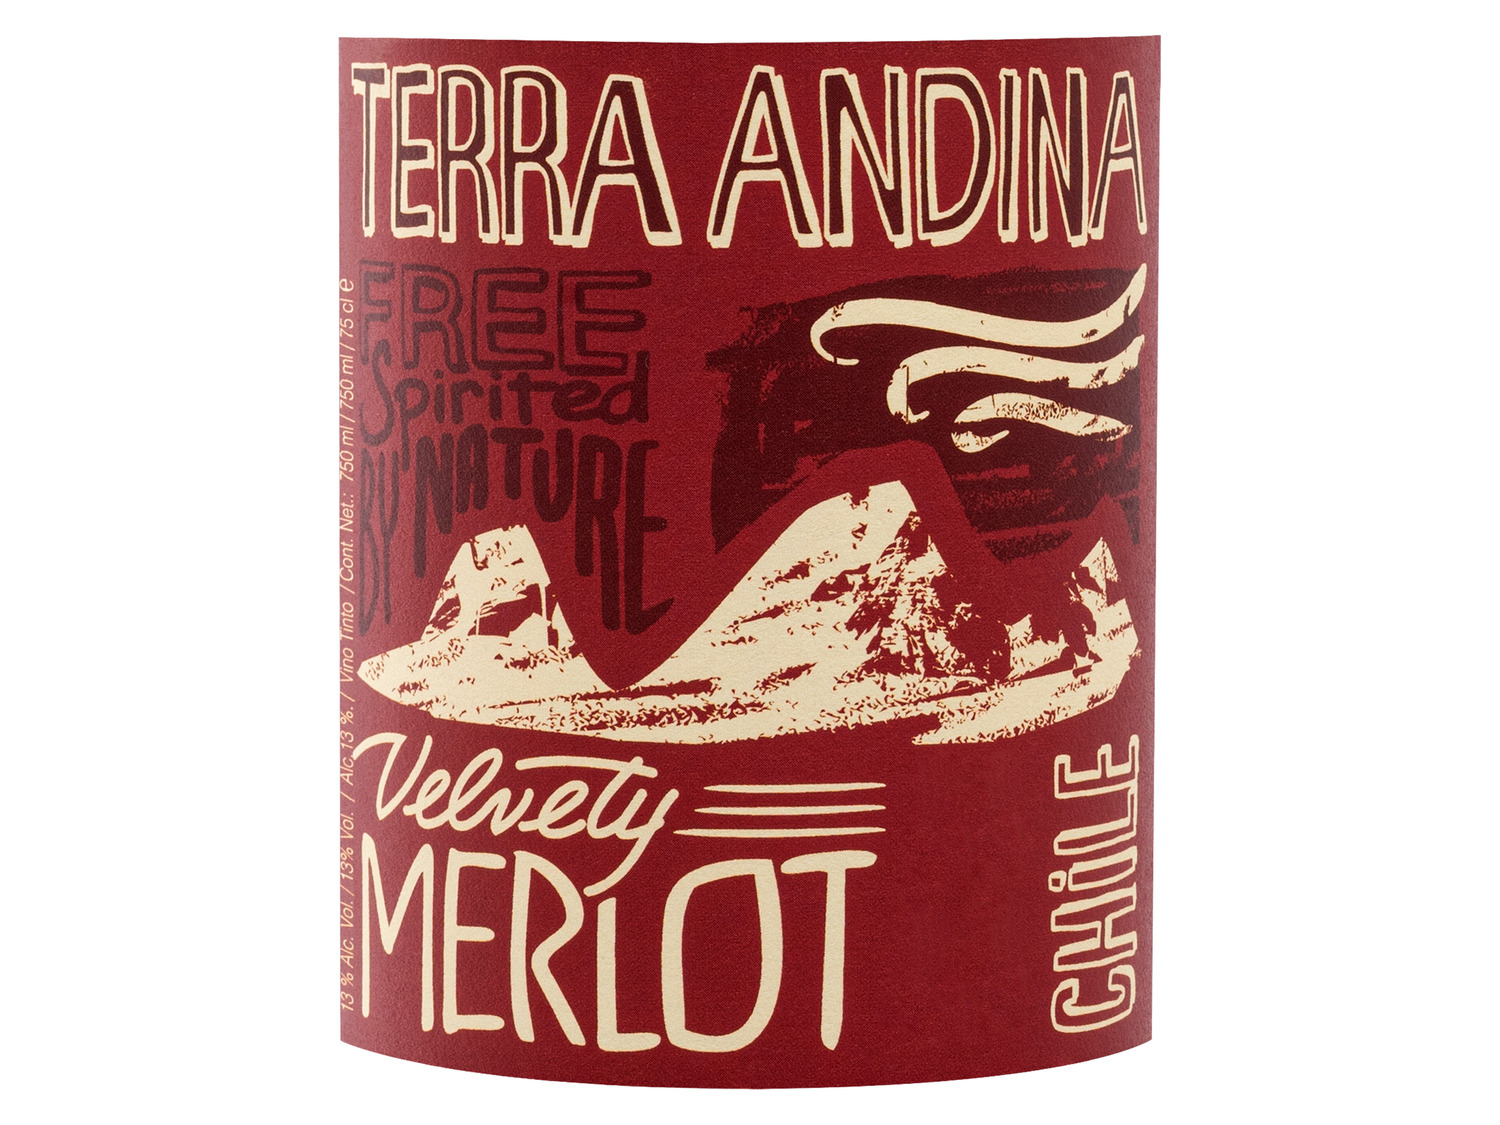 Terra Andina Velvety Merlot Chile Central Valley, Rotw…